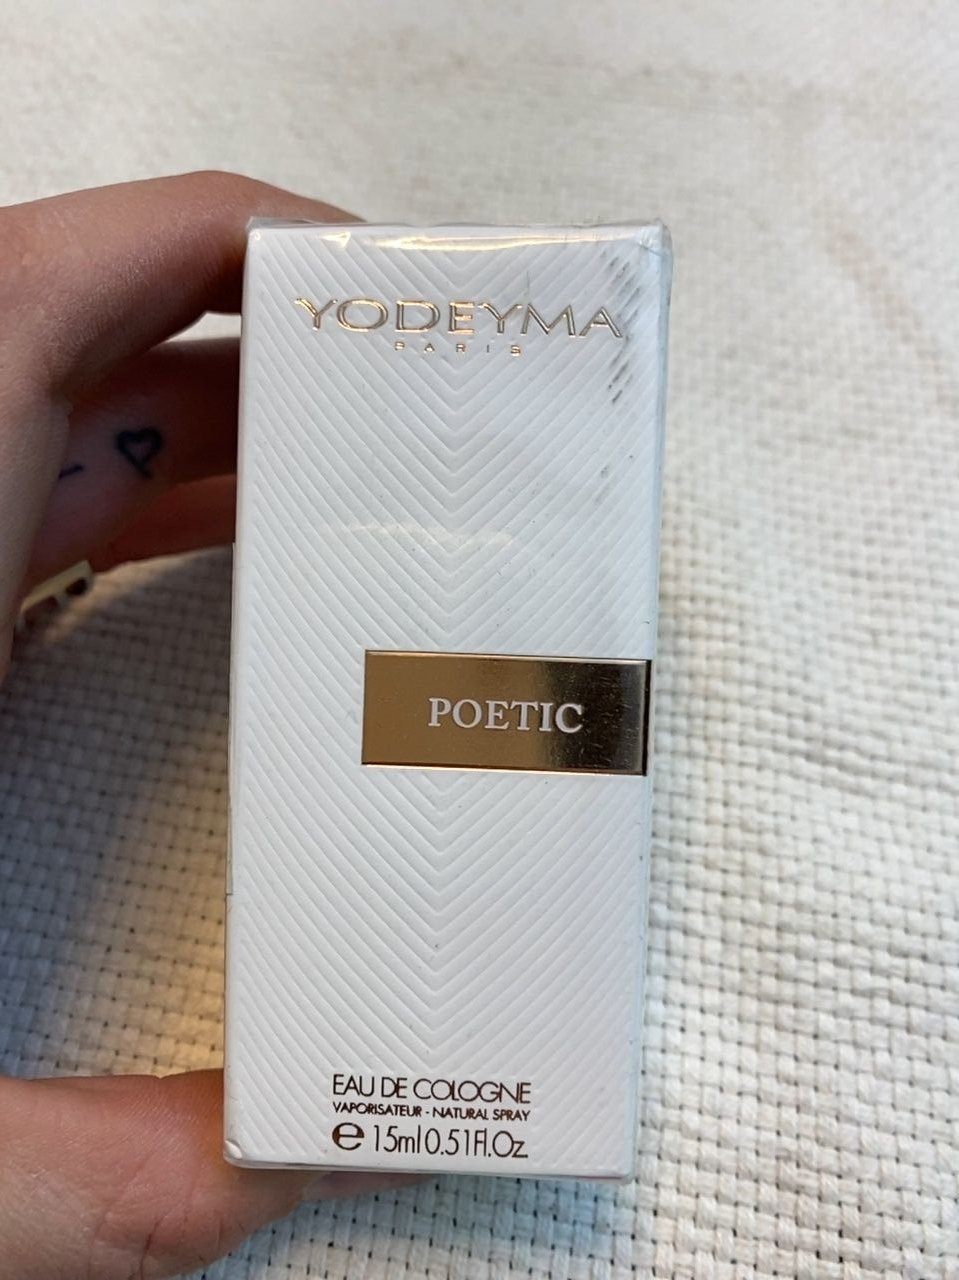 dámský parfém YODEYMA Paris Poetic